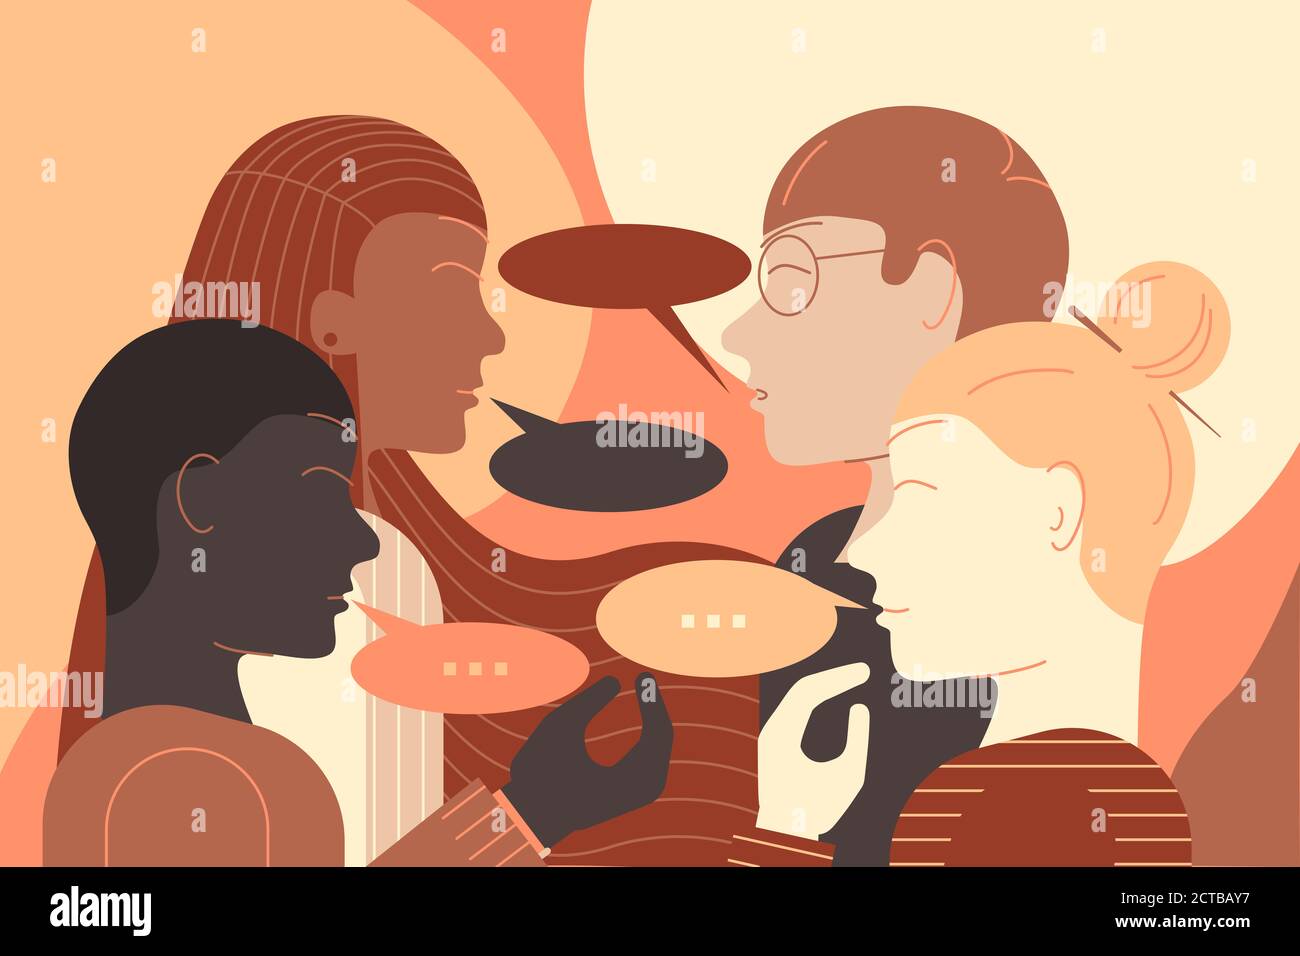 Illustrazione di un gruppo di giovani di diverse etnie che hanno una conversazione faccia a faccia. Illustrazione del design piatto. Foto Stock